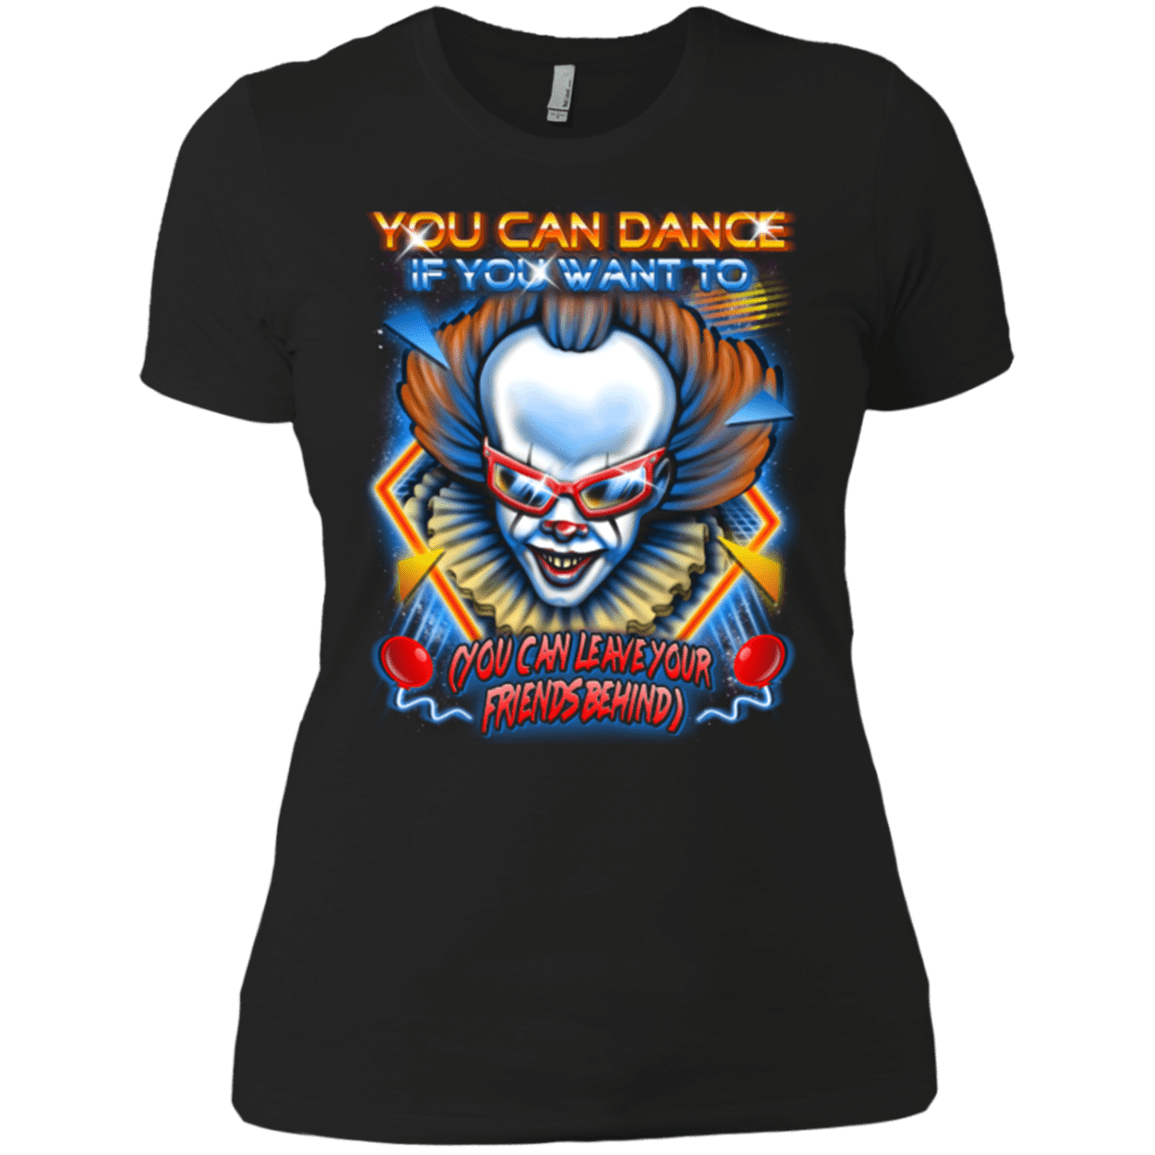 You can Dance Women's Premium T-Shirt